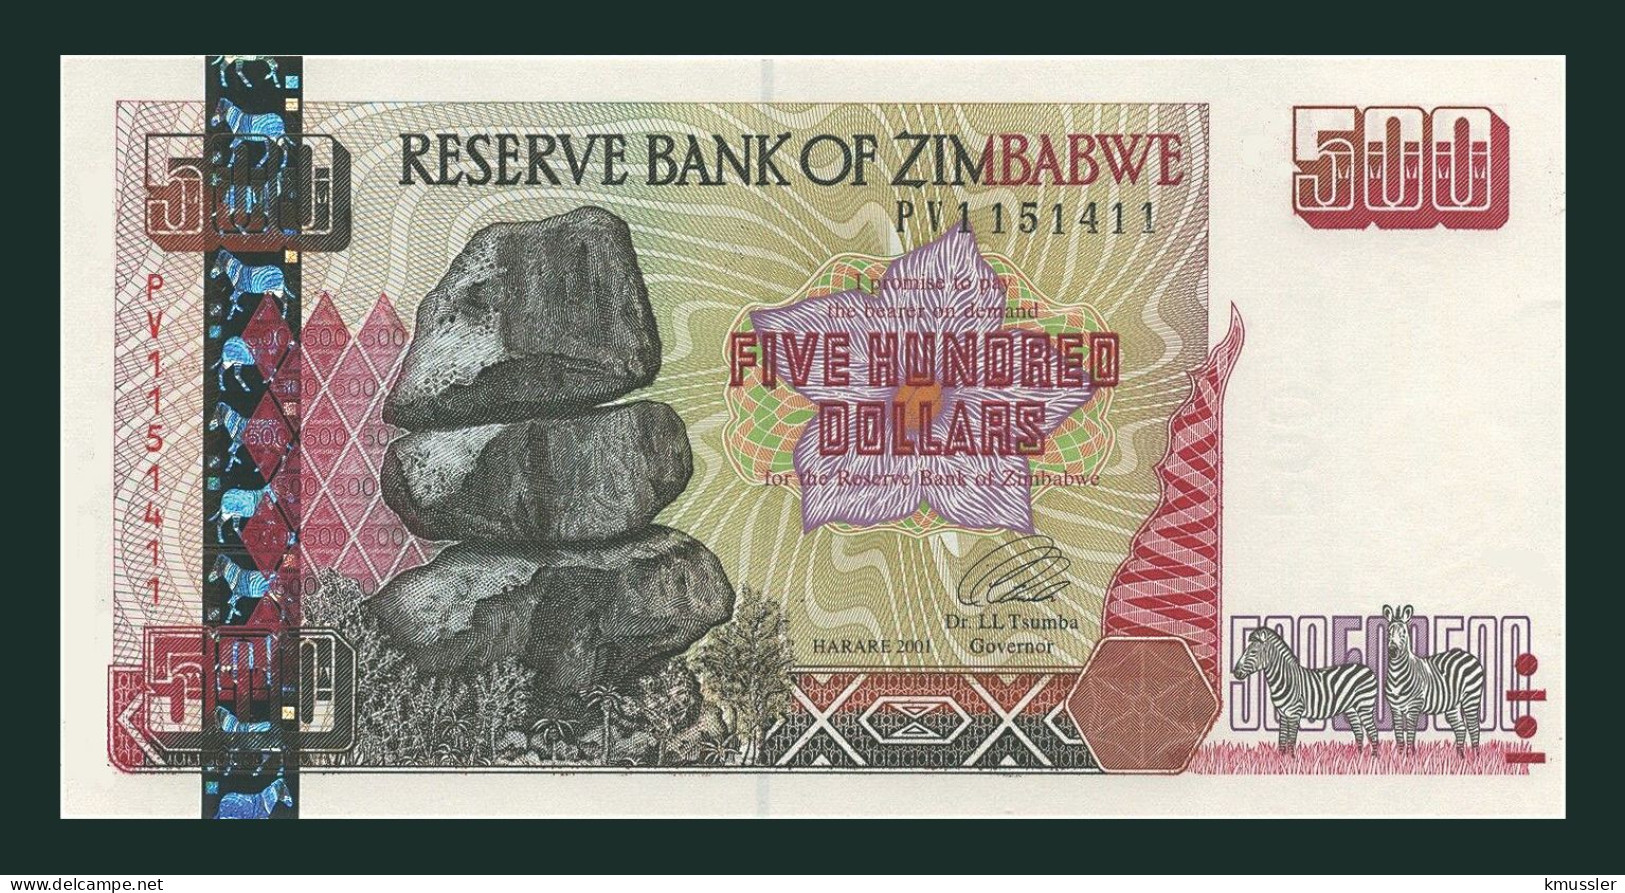 # # # Banknote Simbabwe (Zimbabwe) 500 Dollars 2002 (P-11) UNC # # # - Zimbabwe